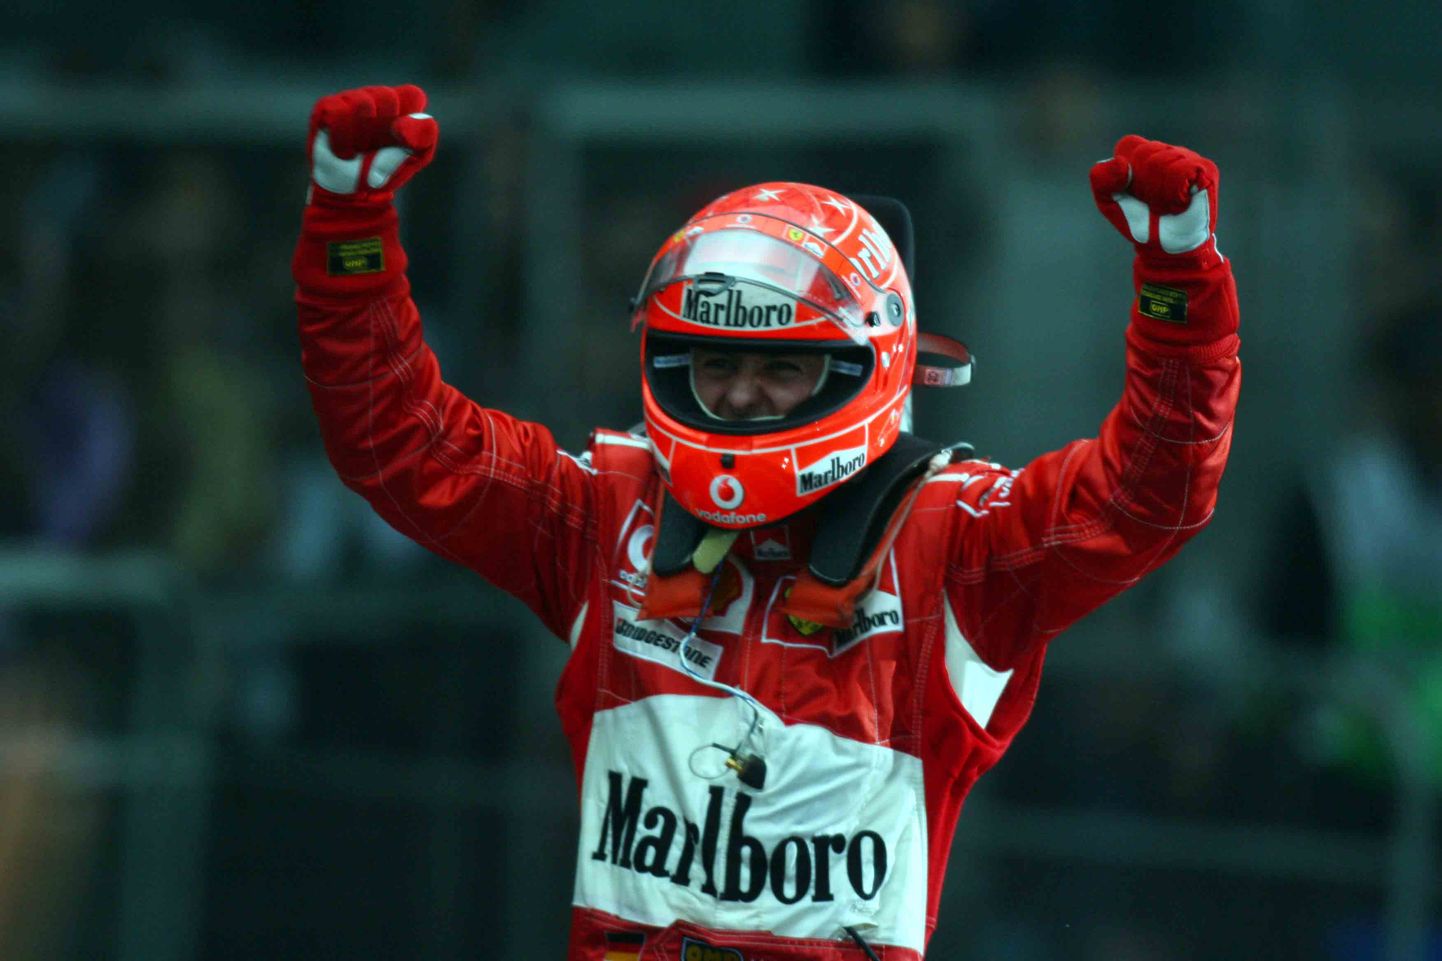 Marlboro oli pikaaegne sponsor Ferrari Vormel 1 meeskonnale, kuni sigarettide reklaamimine vormelitel 2008 keelustati.